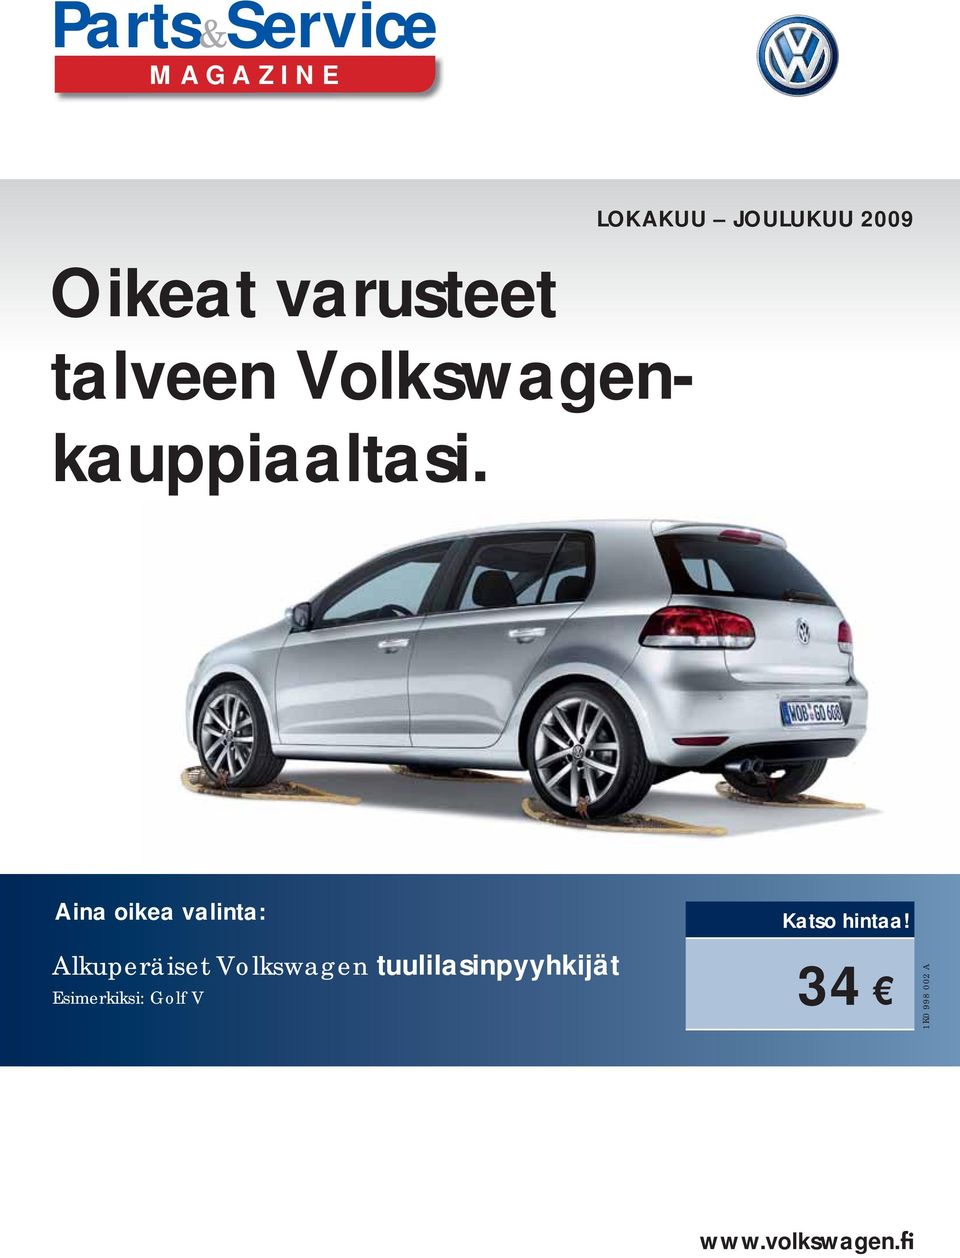 Aina oikea valinta: Alkuperäiset Volkswagen